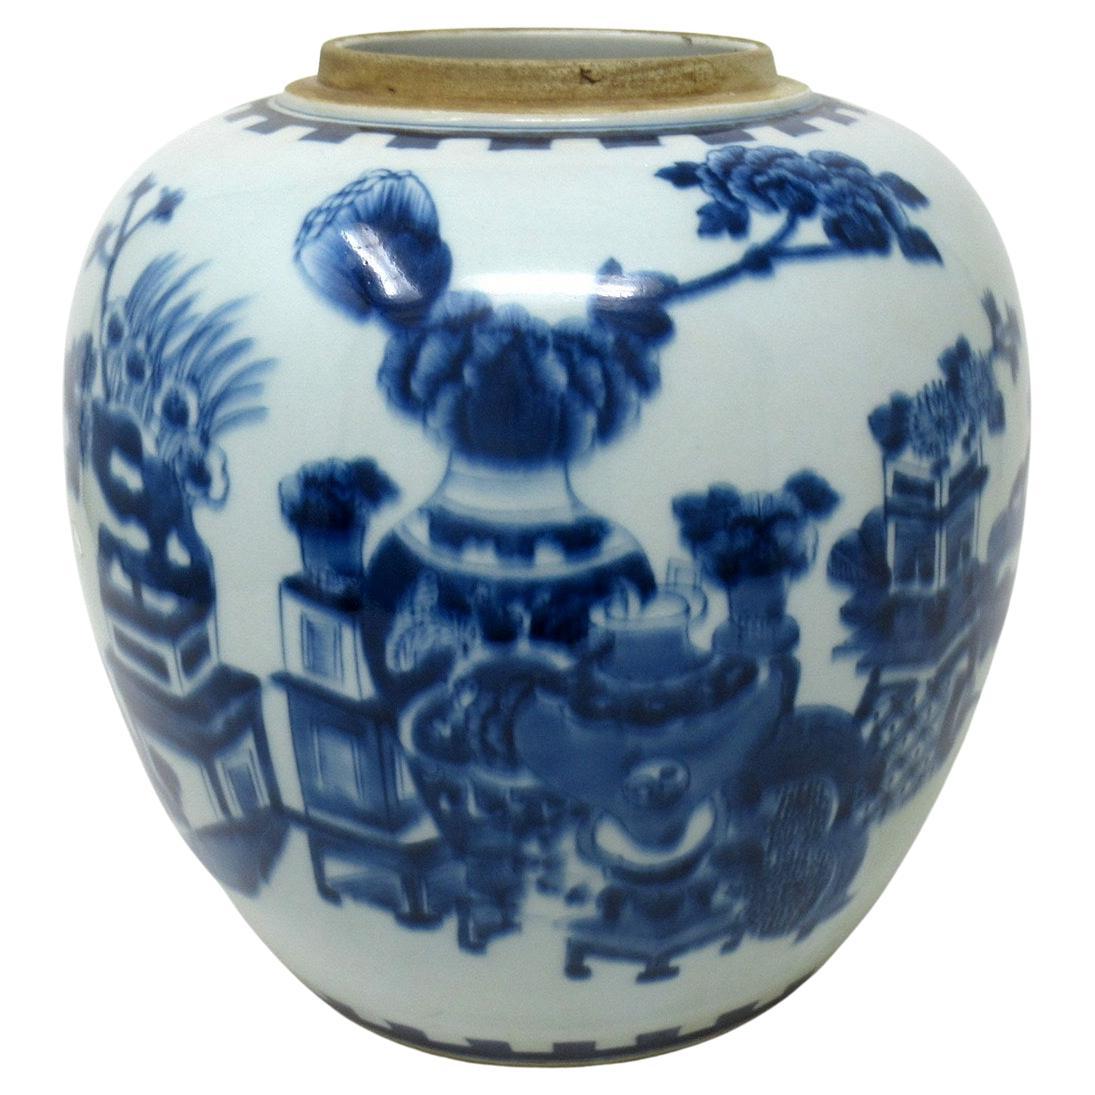 Antique Blue White Chinese Export Porcelain Ginger Jar Vase Urn Qing Dynasty